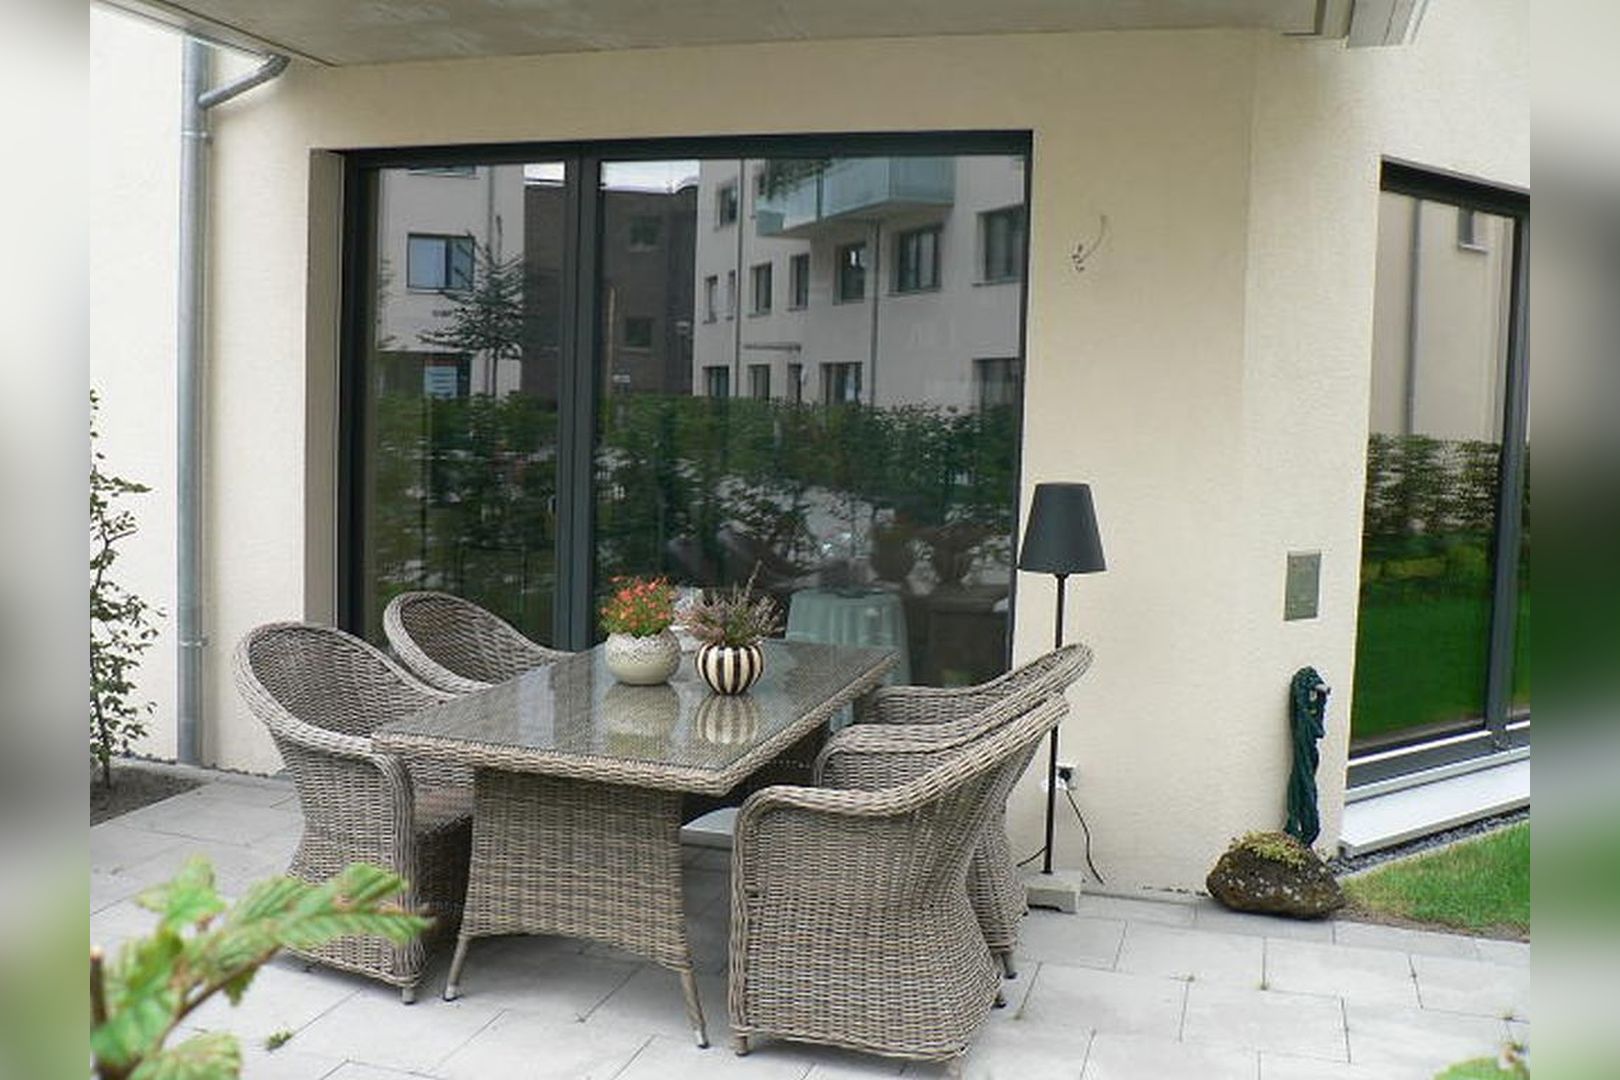 Immobilie Nr.Hilden 007 - 3-Raum-Maisonette-Wohnung mit geschlossenem Küchen u. Essbereich, Terrasse mit kl. Gartenfläche - Bild 12.jpg